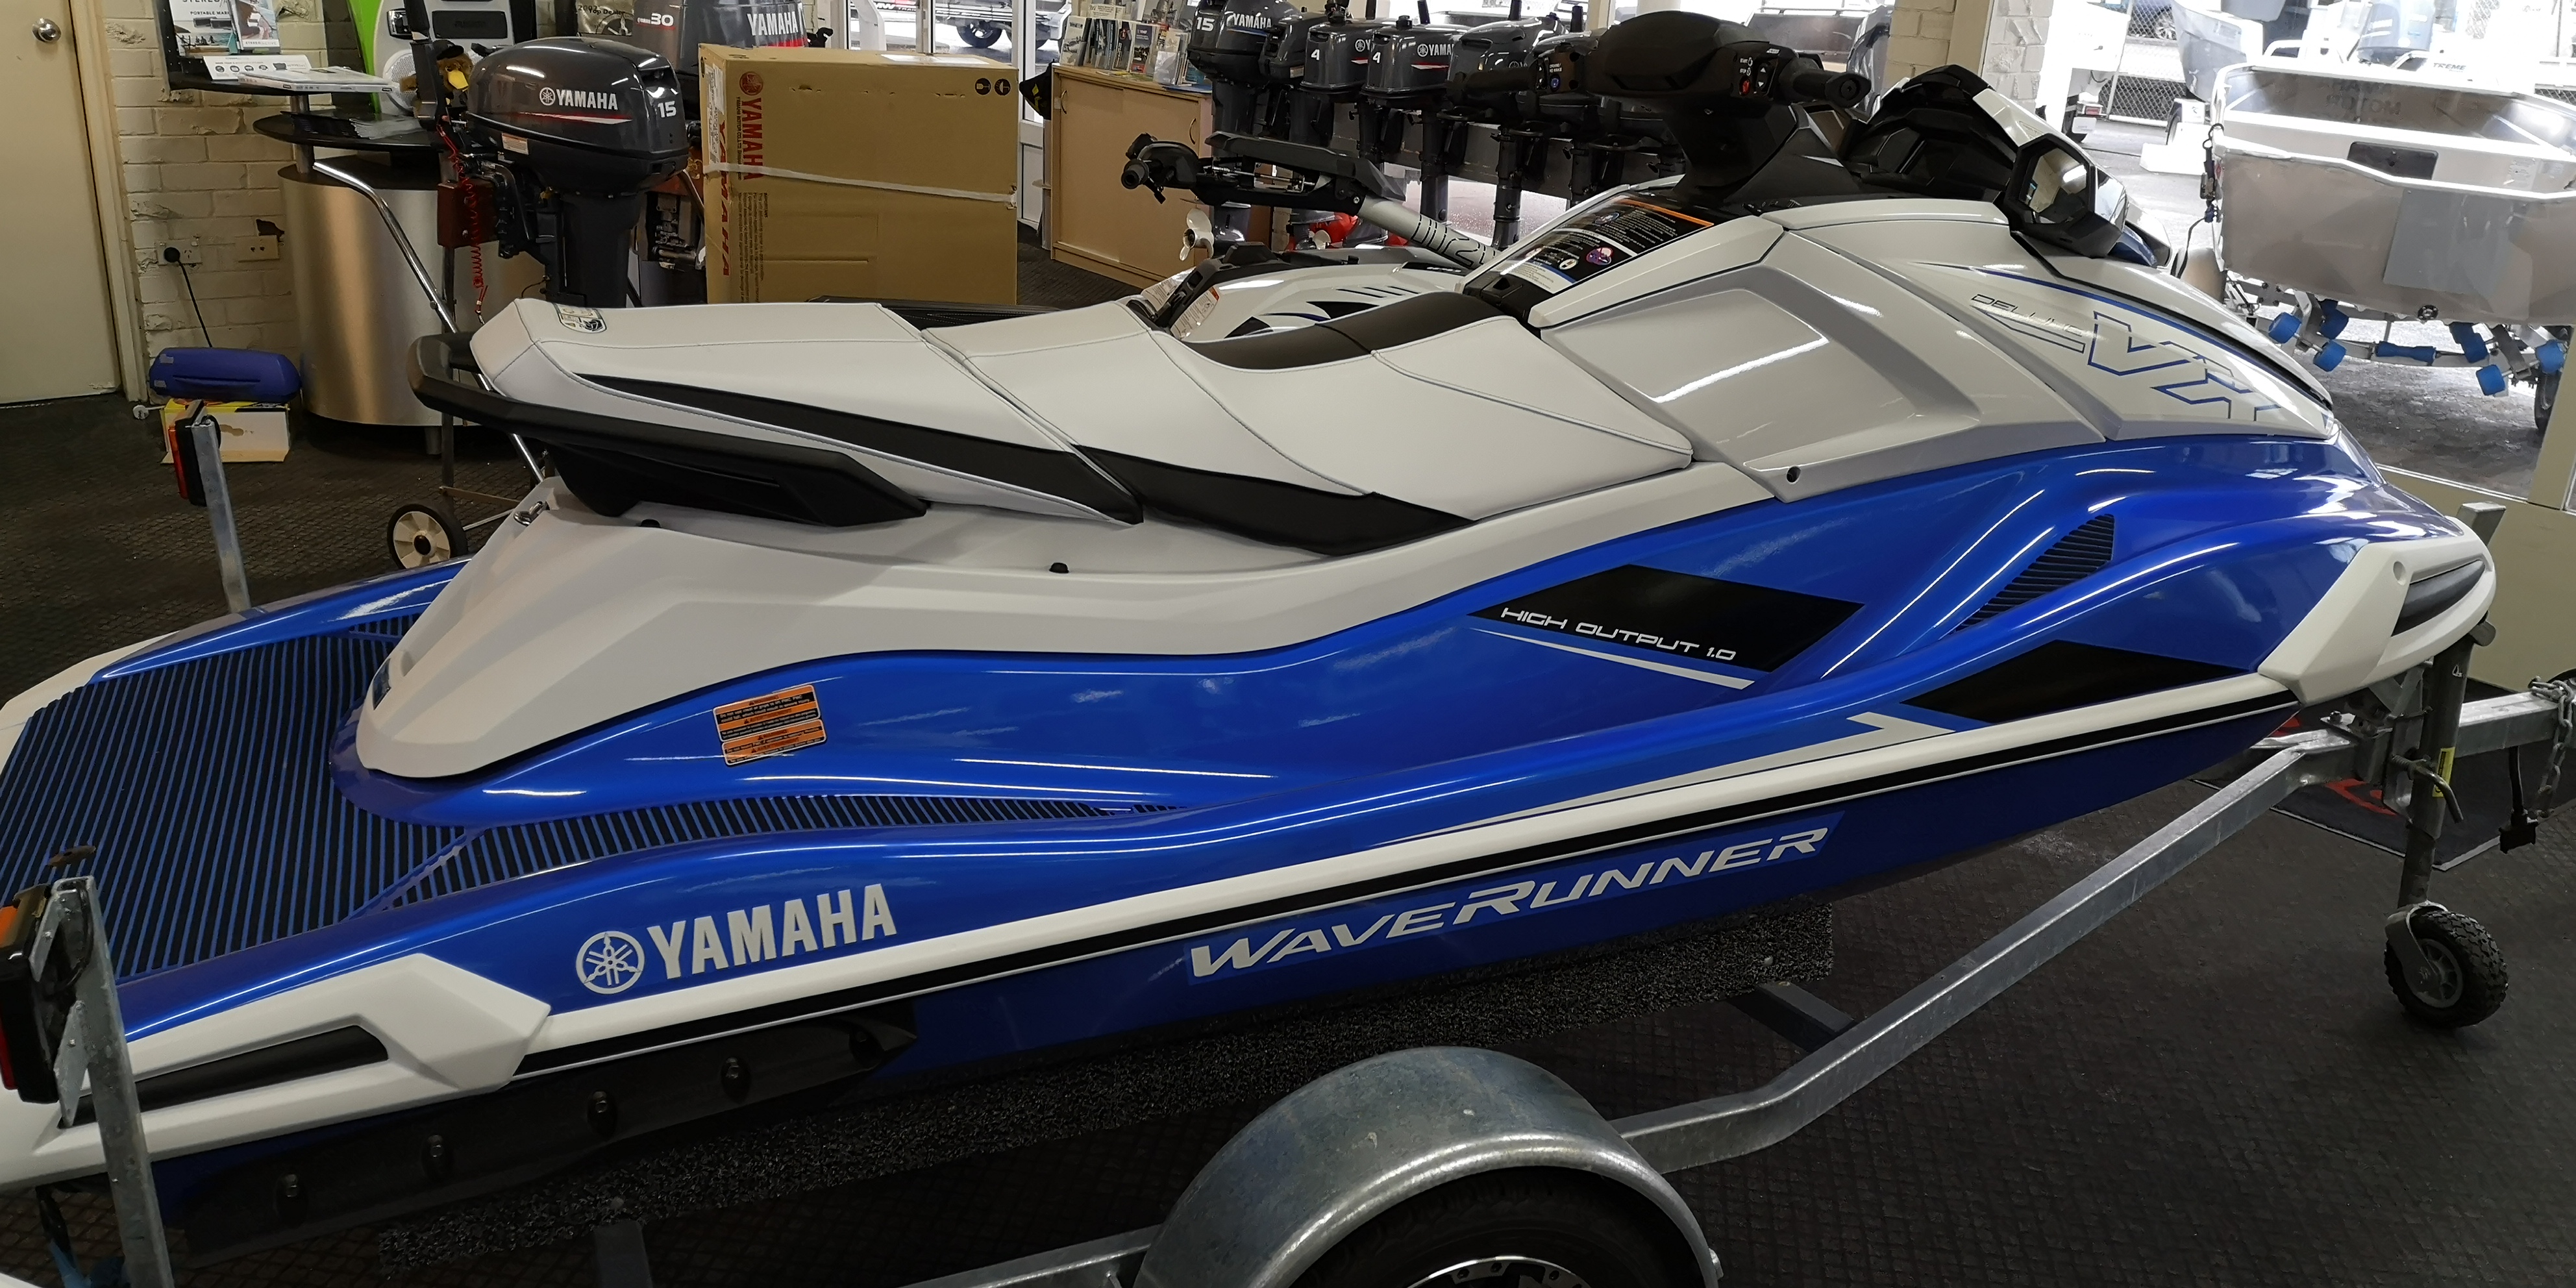 Rogers Boatshop: Yamaha / VX Deluxe / 2021